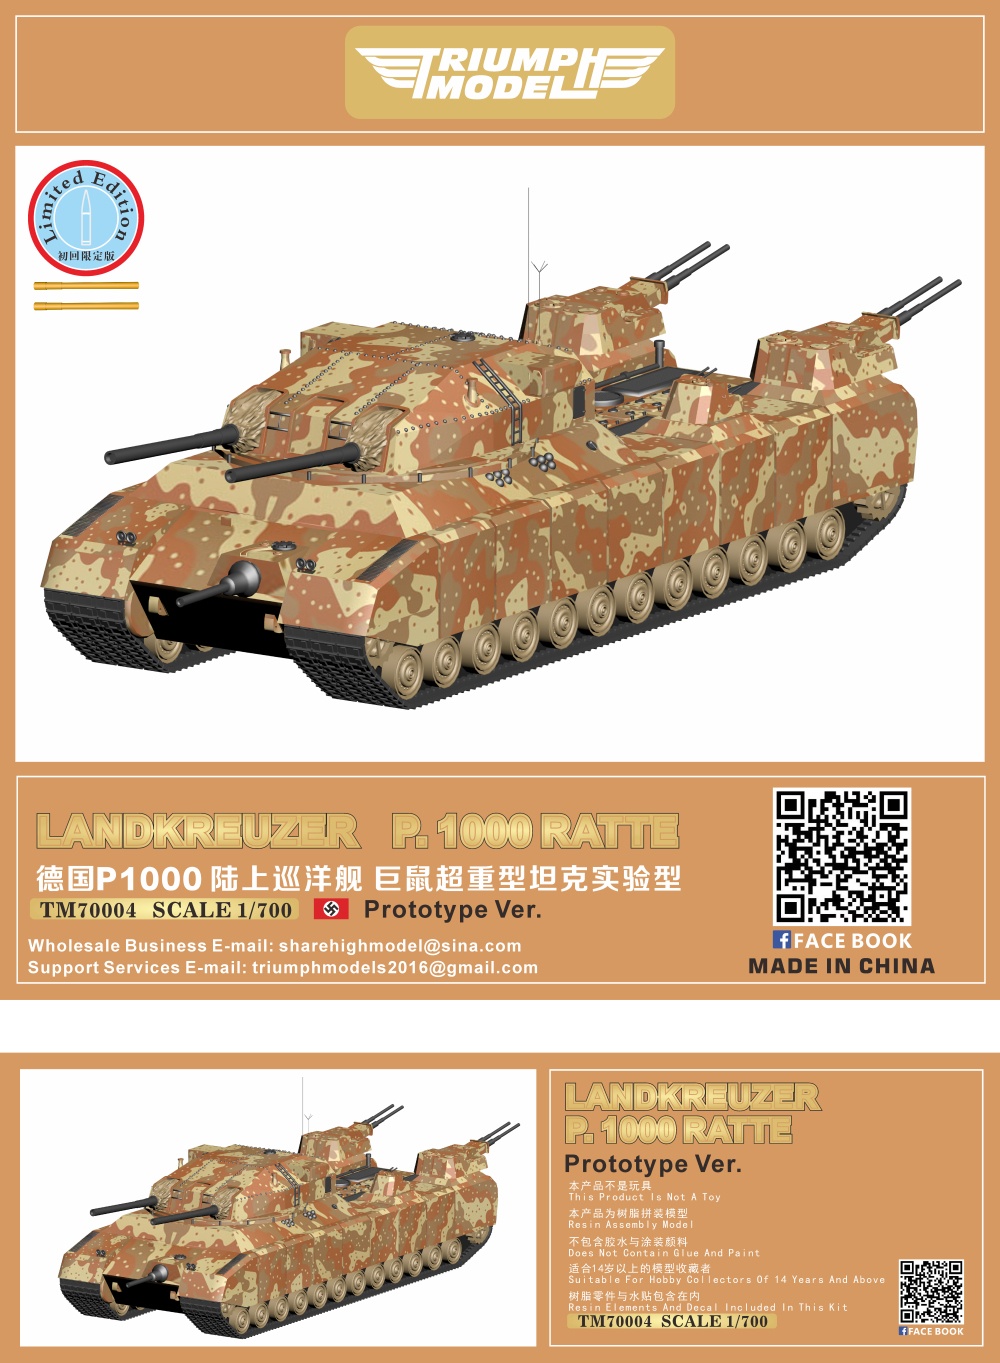 Landkreuzer P 1000 Ratte, schwerer Gustav, m103, panzer Viii Maus,  superheavy Tank, panzerkampfwagen E100, panther Tank, Tiger I, heavy Tank,  Churchill tank